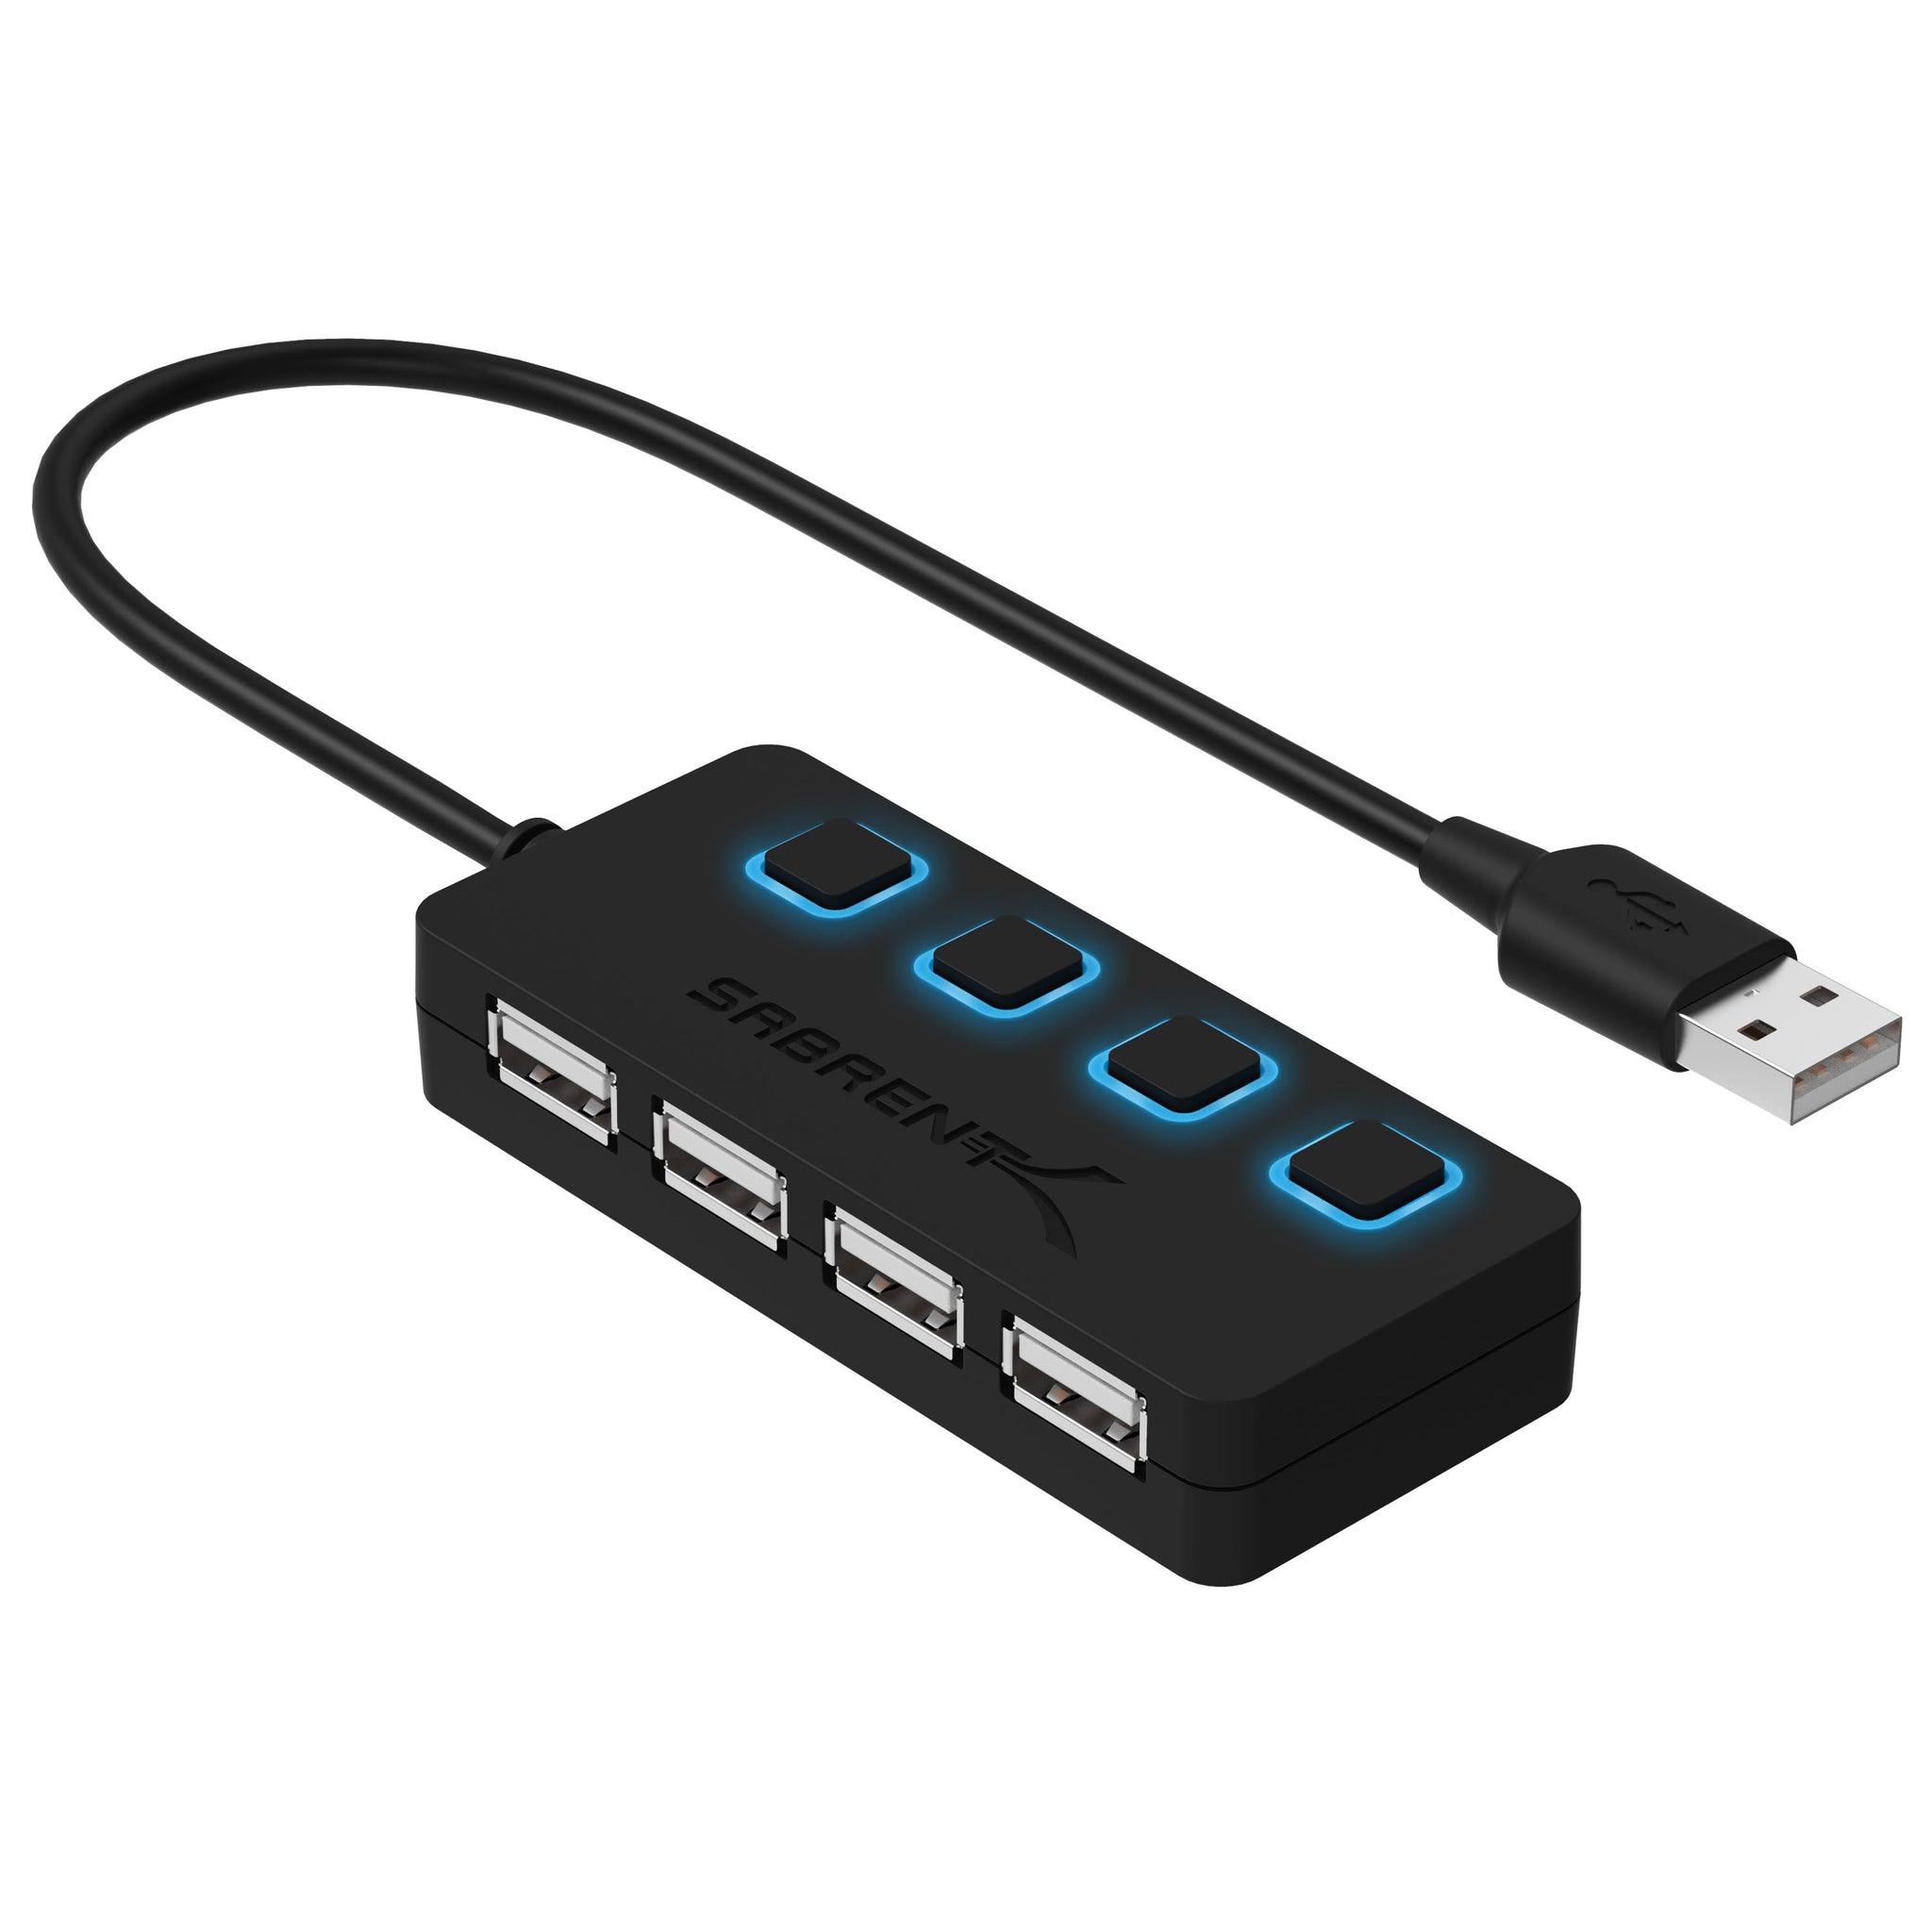 USB 2.0 Mini Hub (3-PORT) – Essentials Series